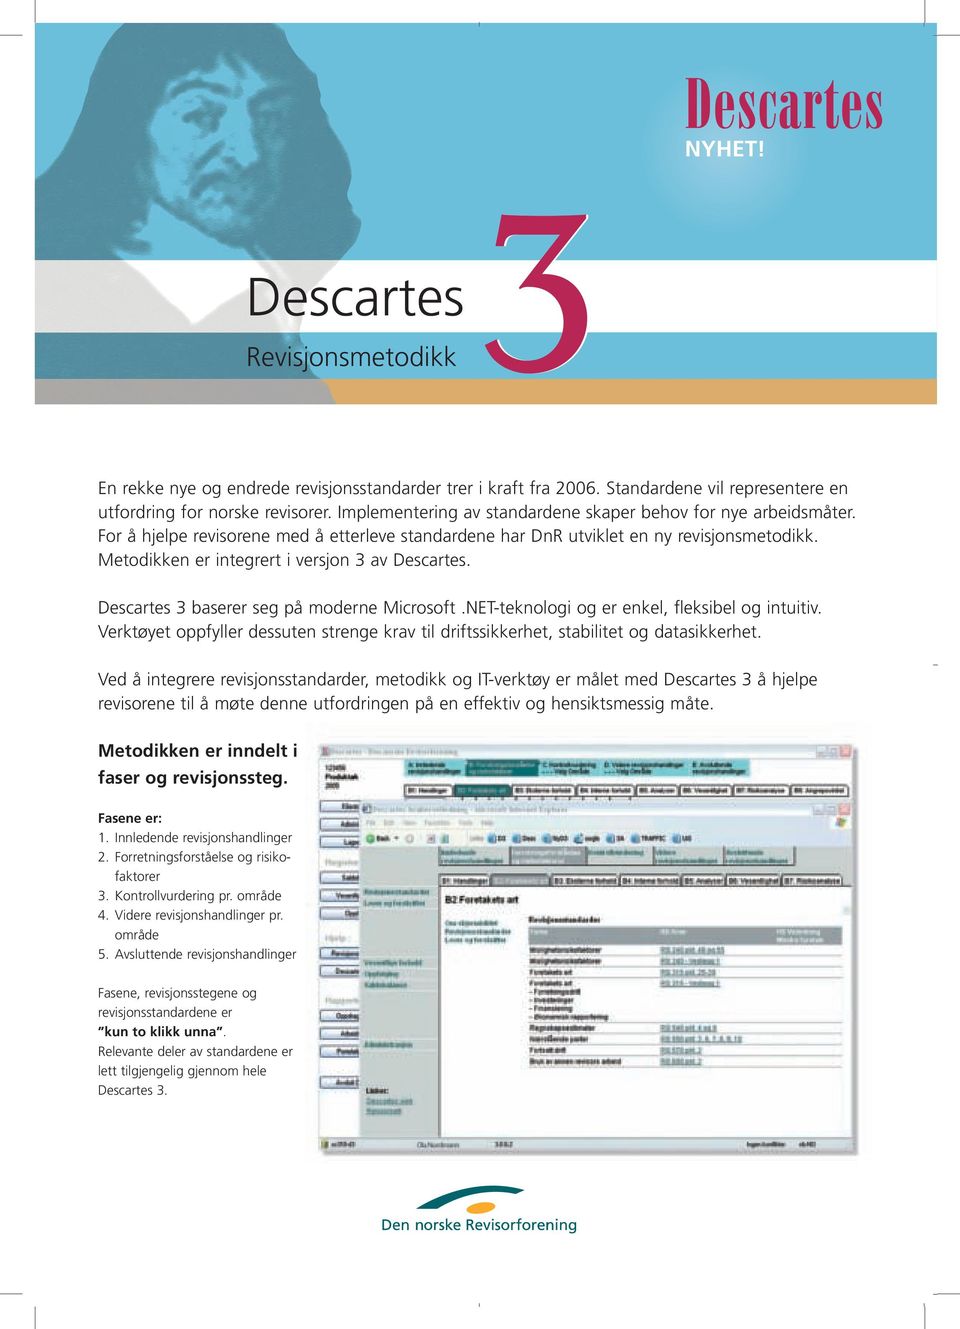 For å hjelpe revisorene med å etterleve standardene har DnR utviklet en ny revisjonsmetodikk. Metodikken er integrert i versjon 3 av Descartes. Descartes 3 baserer seg på moderne Microsoft.